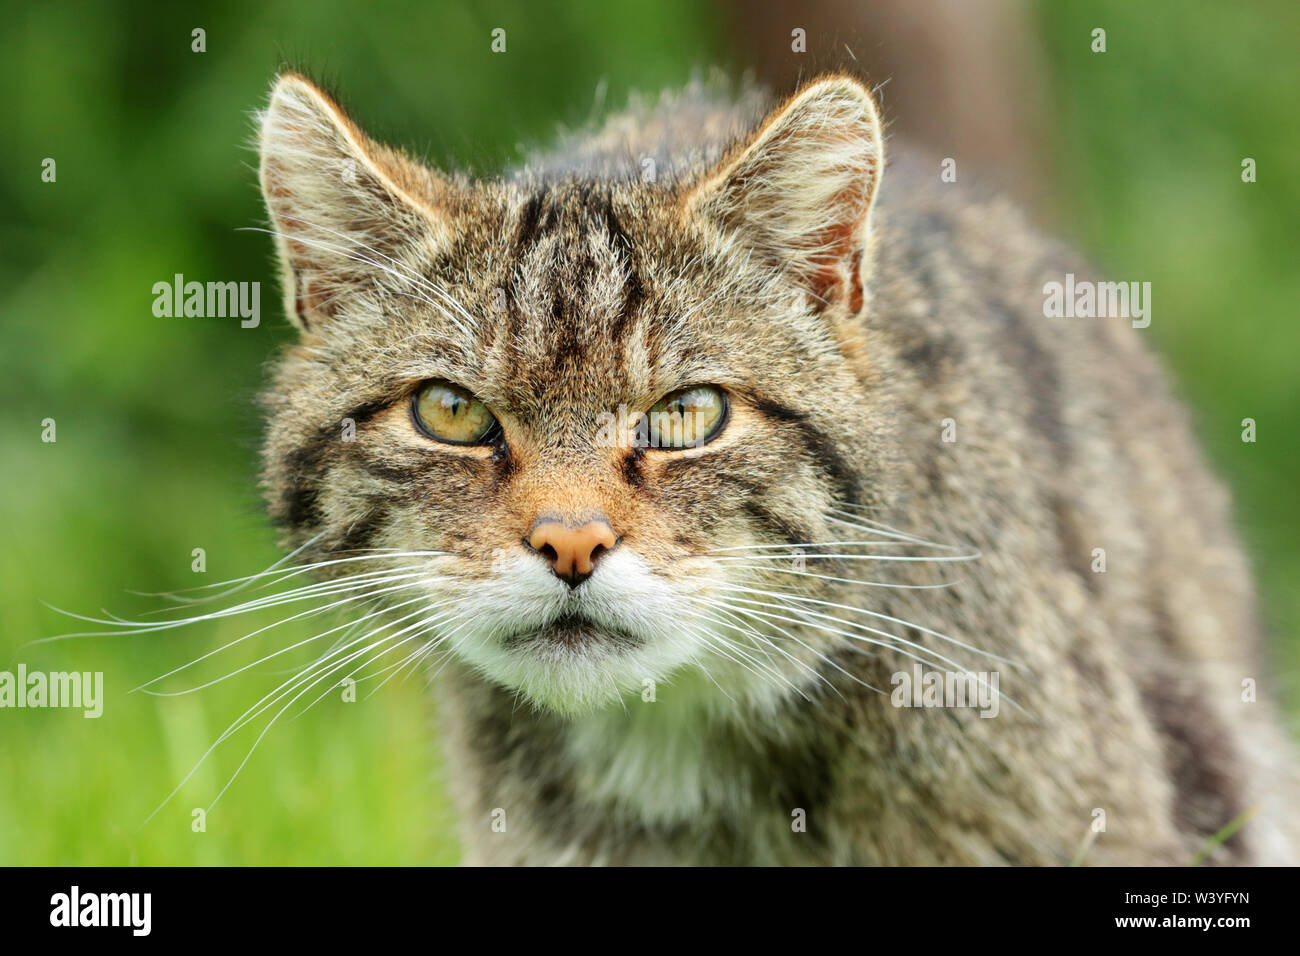 Scottish Wildcat (Felis silvestris) : un insaisissable et gravement menacées d'extinction du chat maintenant trouvés seulement dans des coins éloignés des Highlands écossais. Banque D'Images